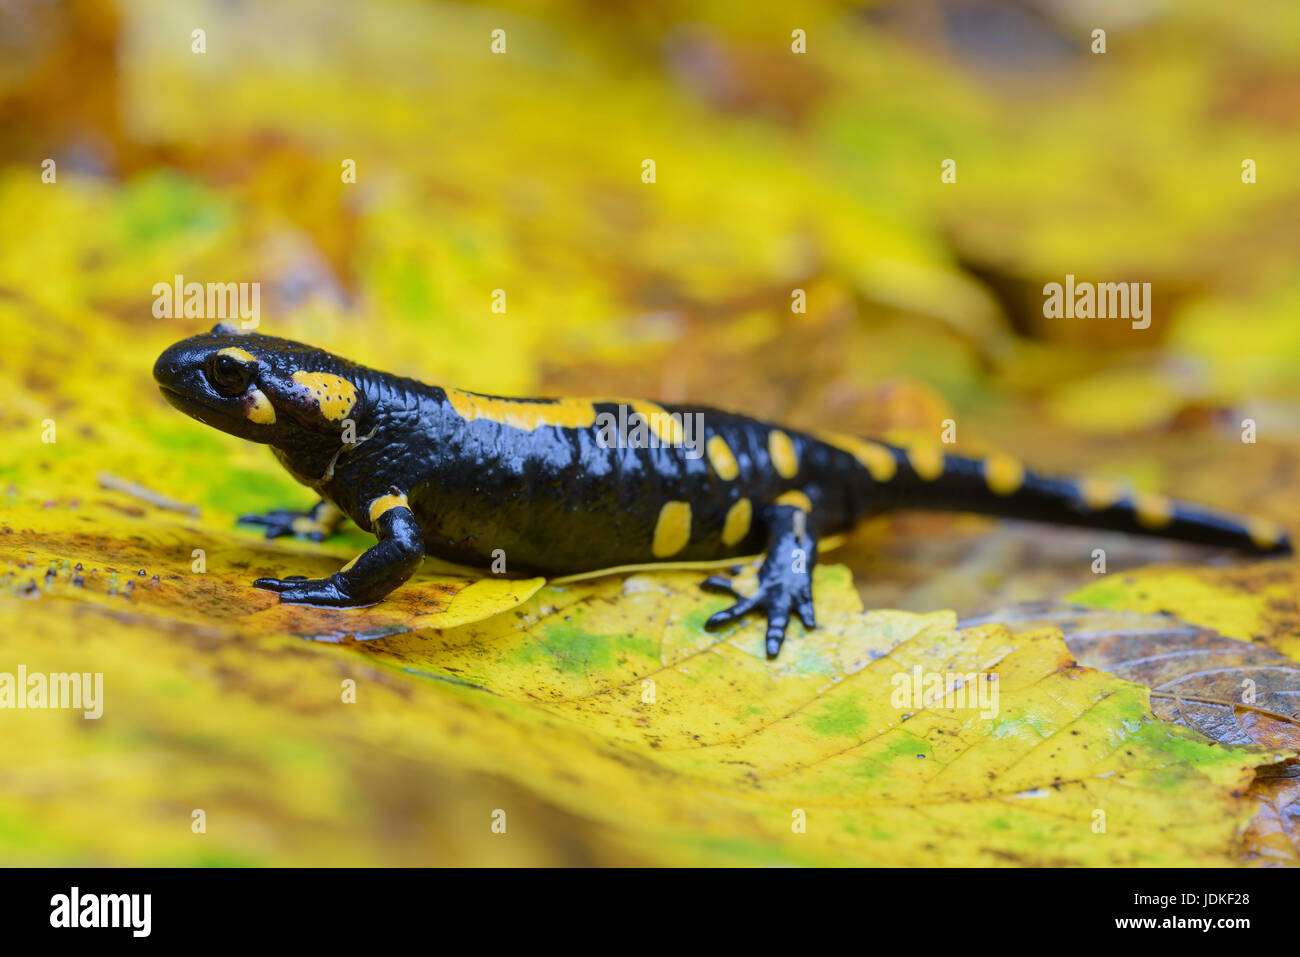 Salamandra pezzata siede su giallo foglie di acero, Feuersalamander sitzt auf gelben Ahornblättern Foto Stock